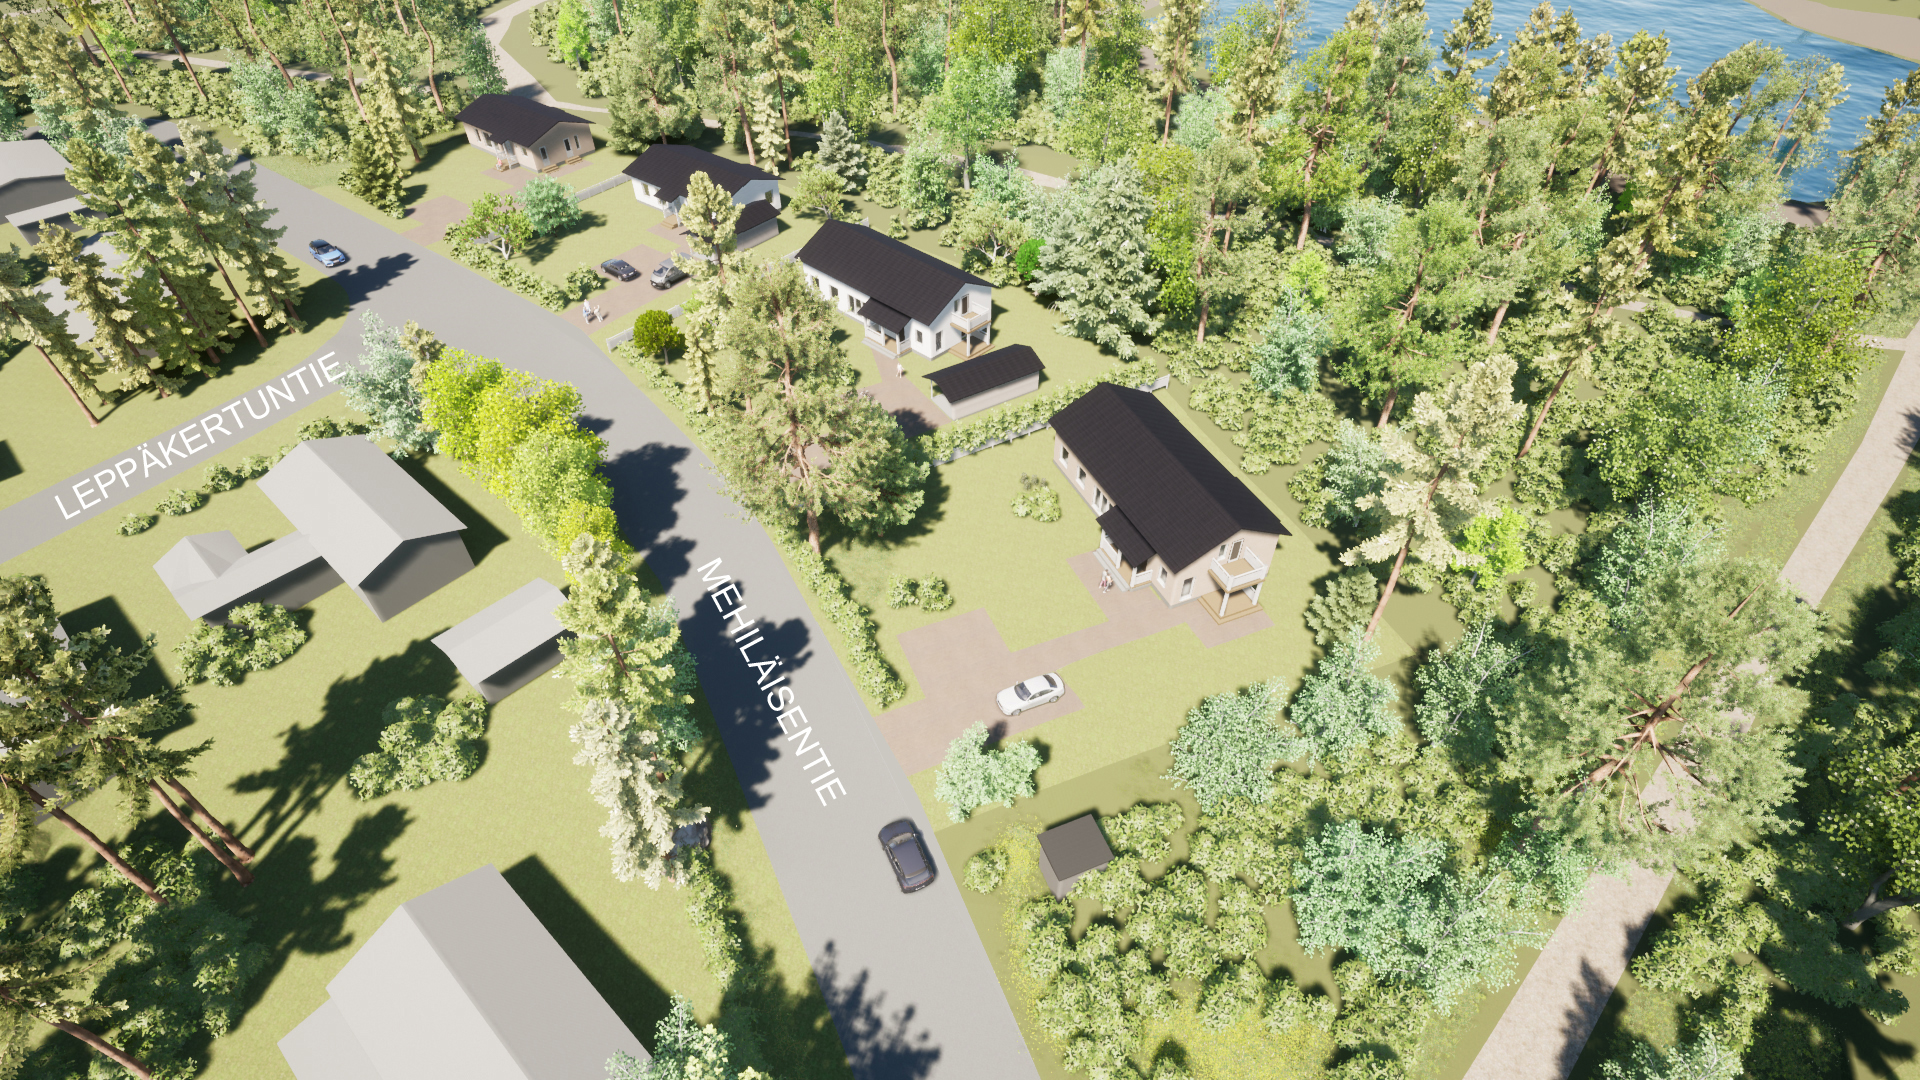 Havainnekuva Lappeenrannan Mäntylän alueen uusista omakotitalotonteista. Taloja, katuja, puita, vesialuetta.